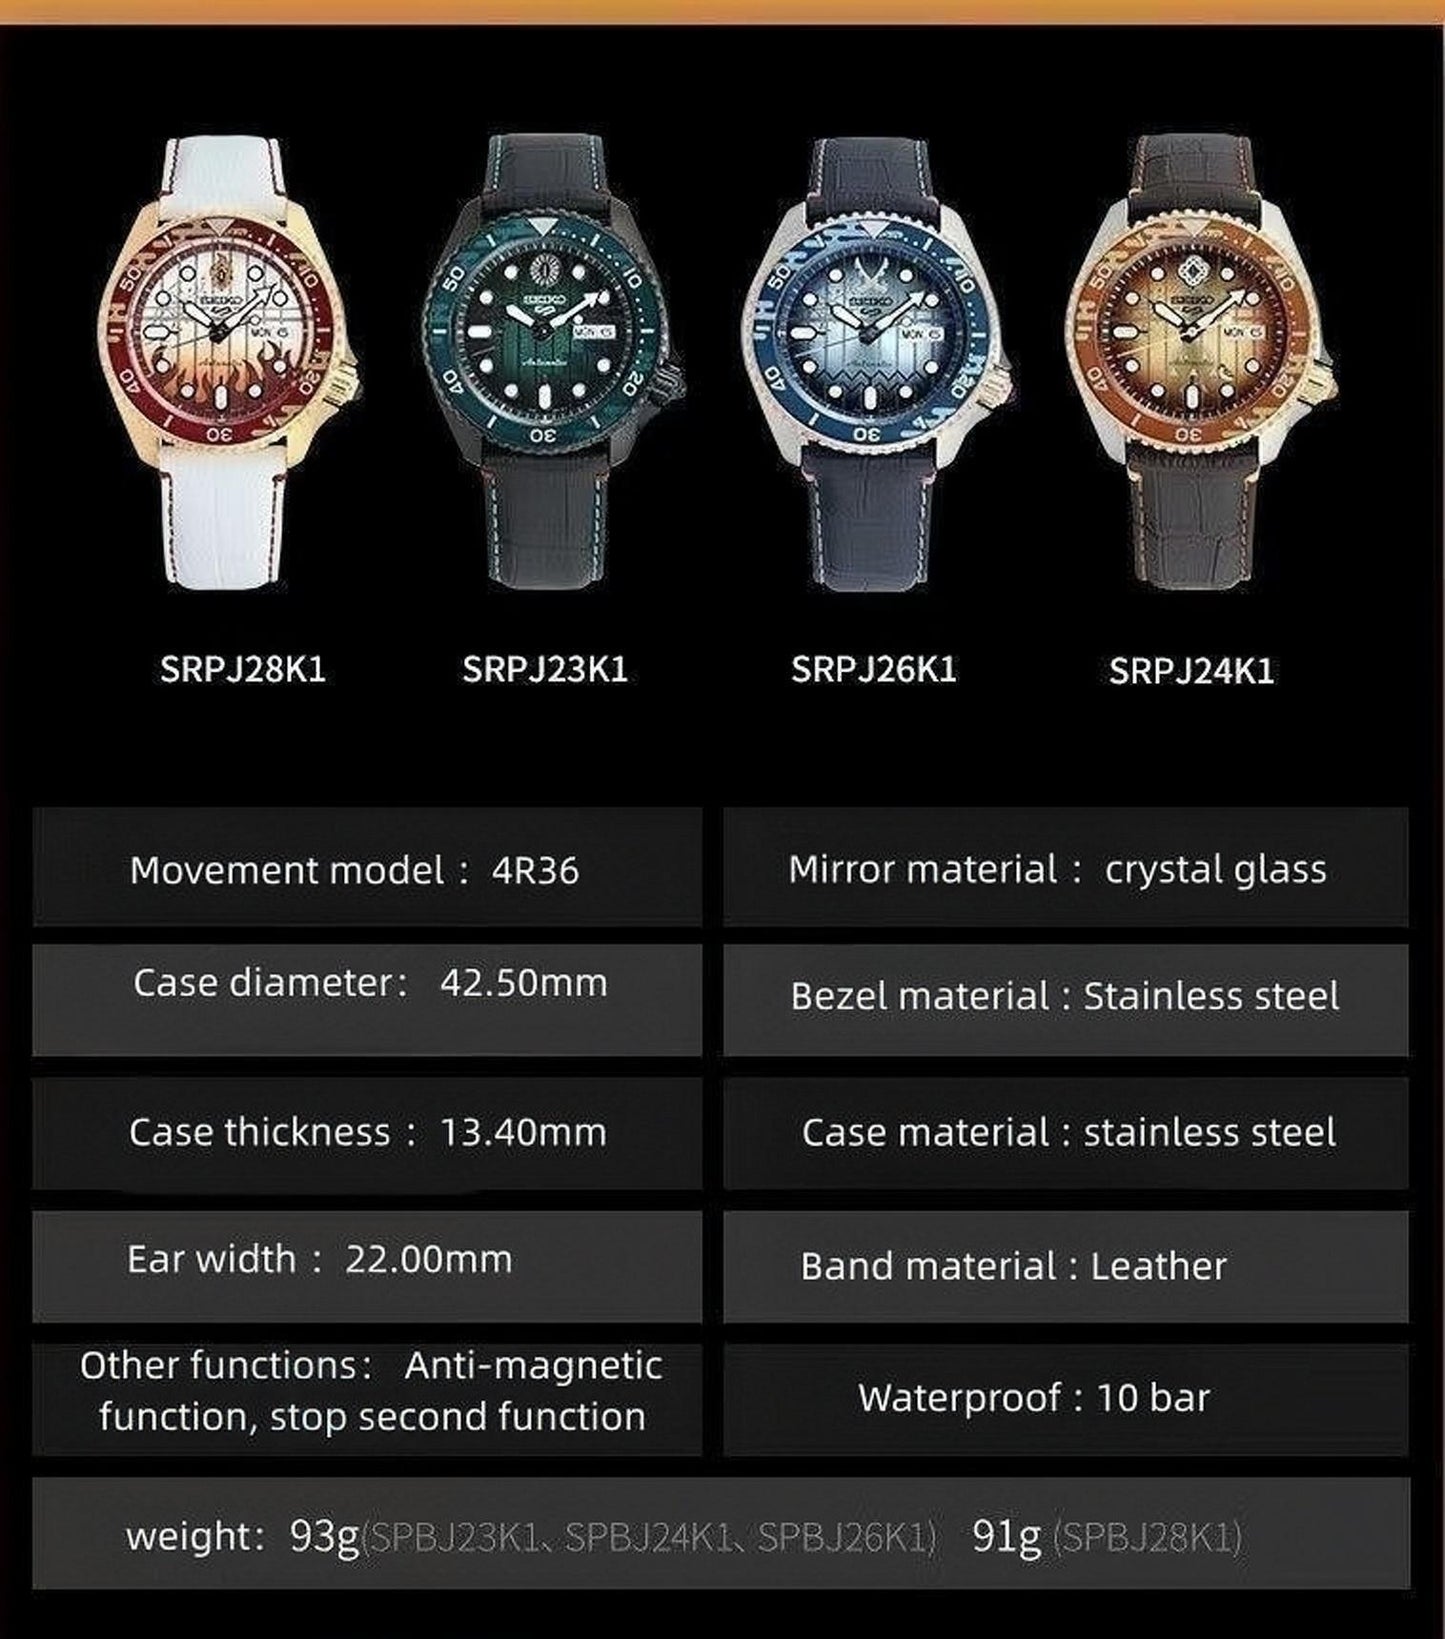 Agatsuma Zenitsu theme watch mechanical watch waterproof only 20 available